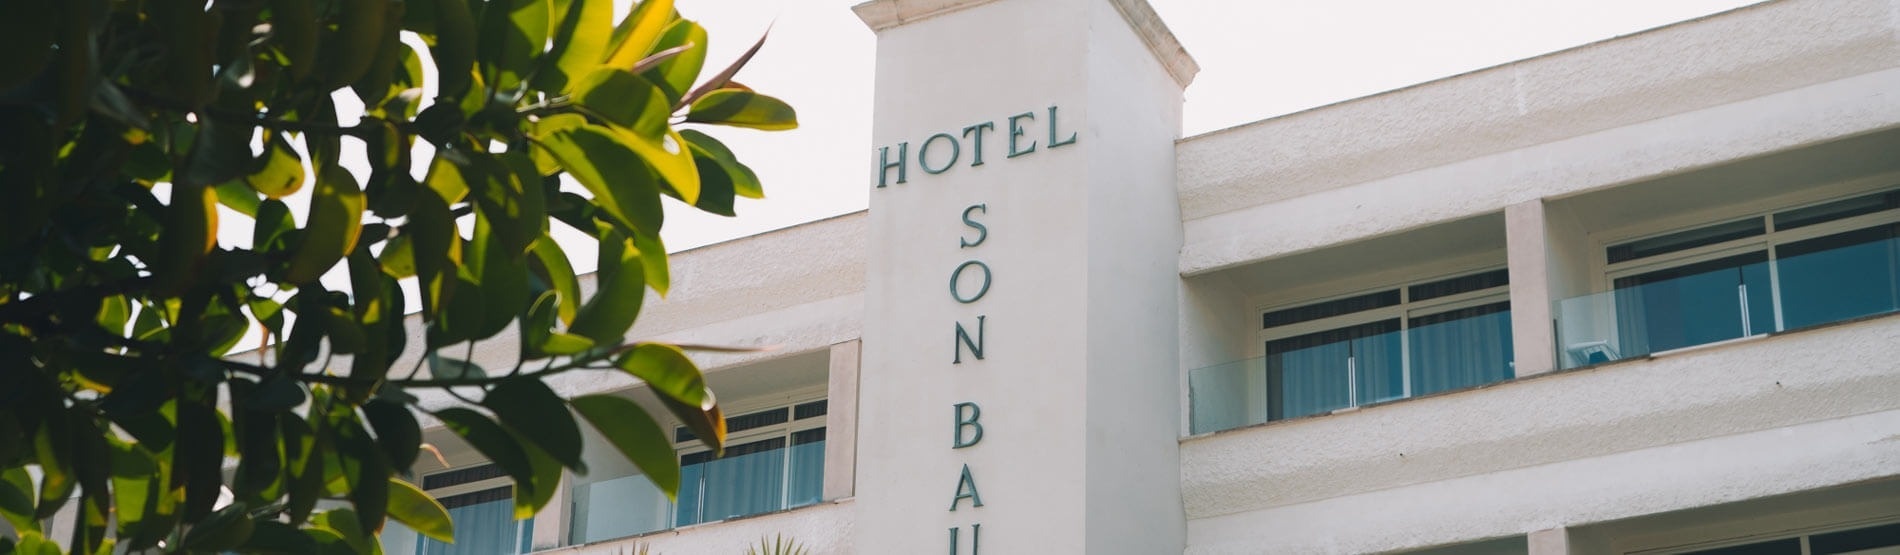 un edificio blanco con la palabra hotel sonbau en la parte superior